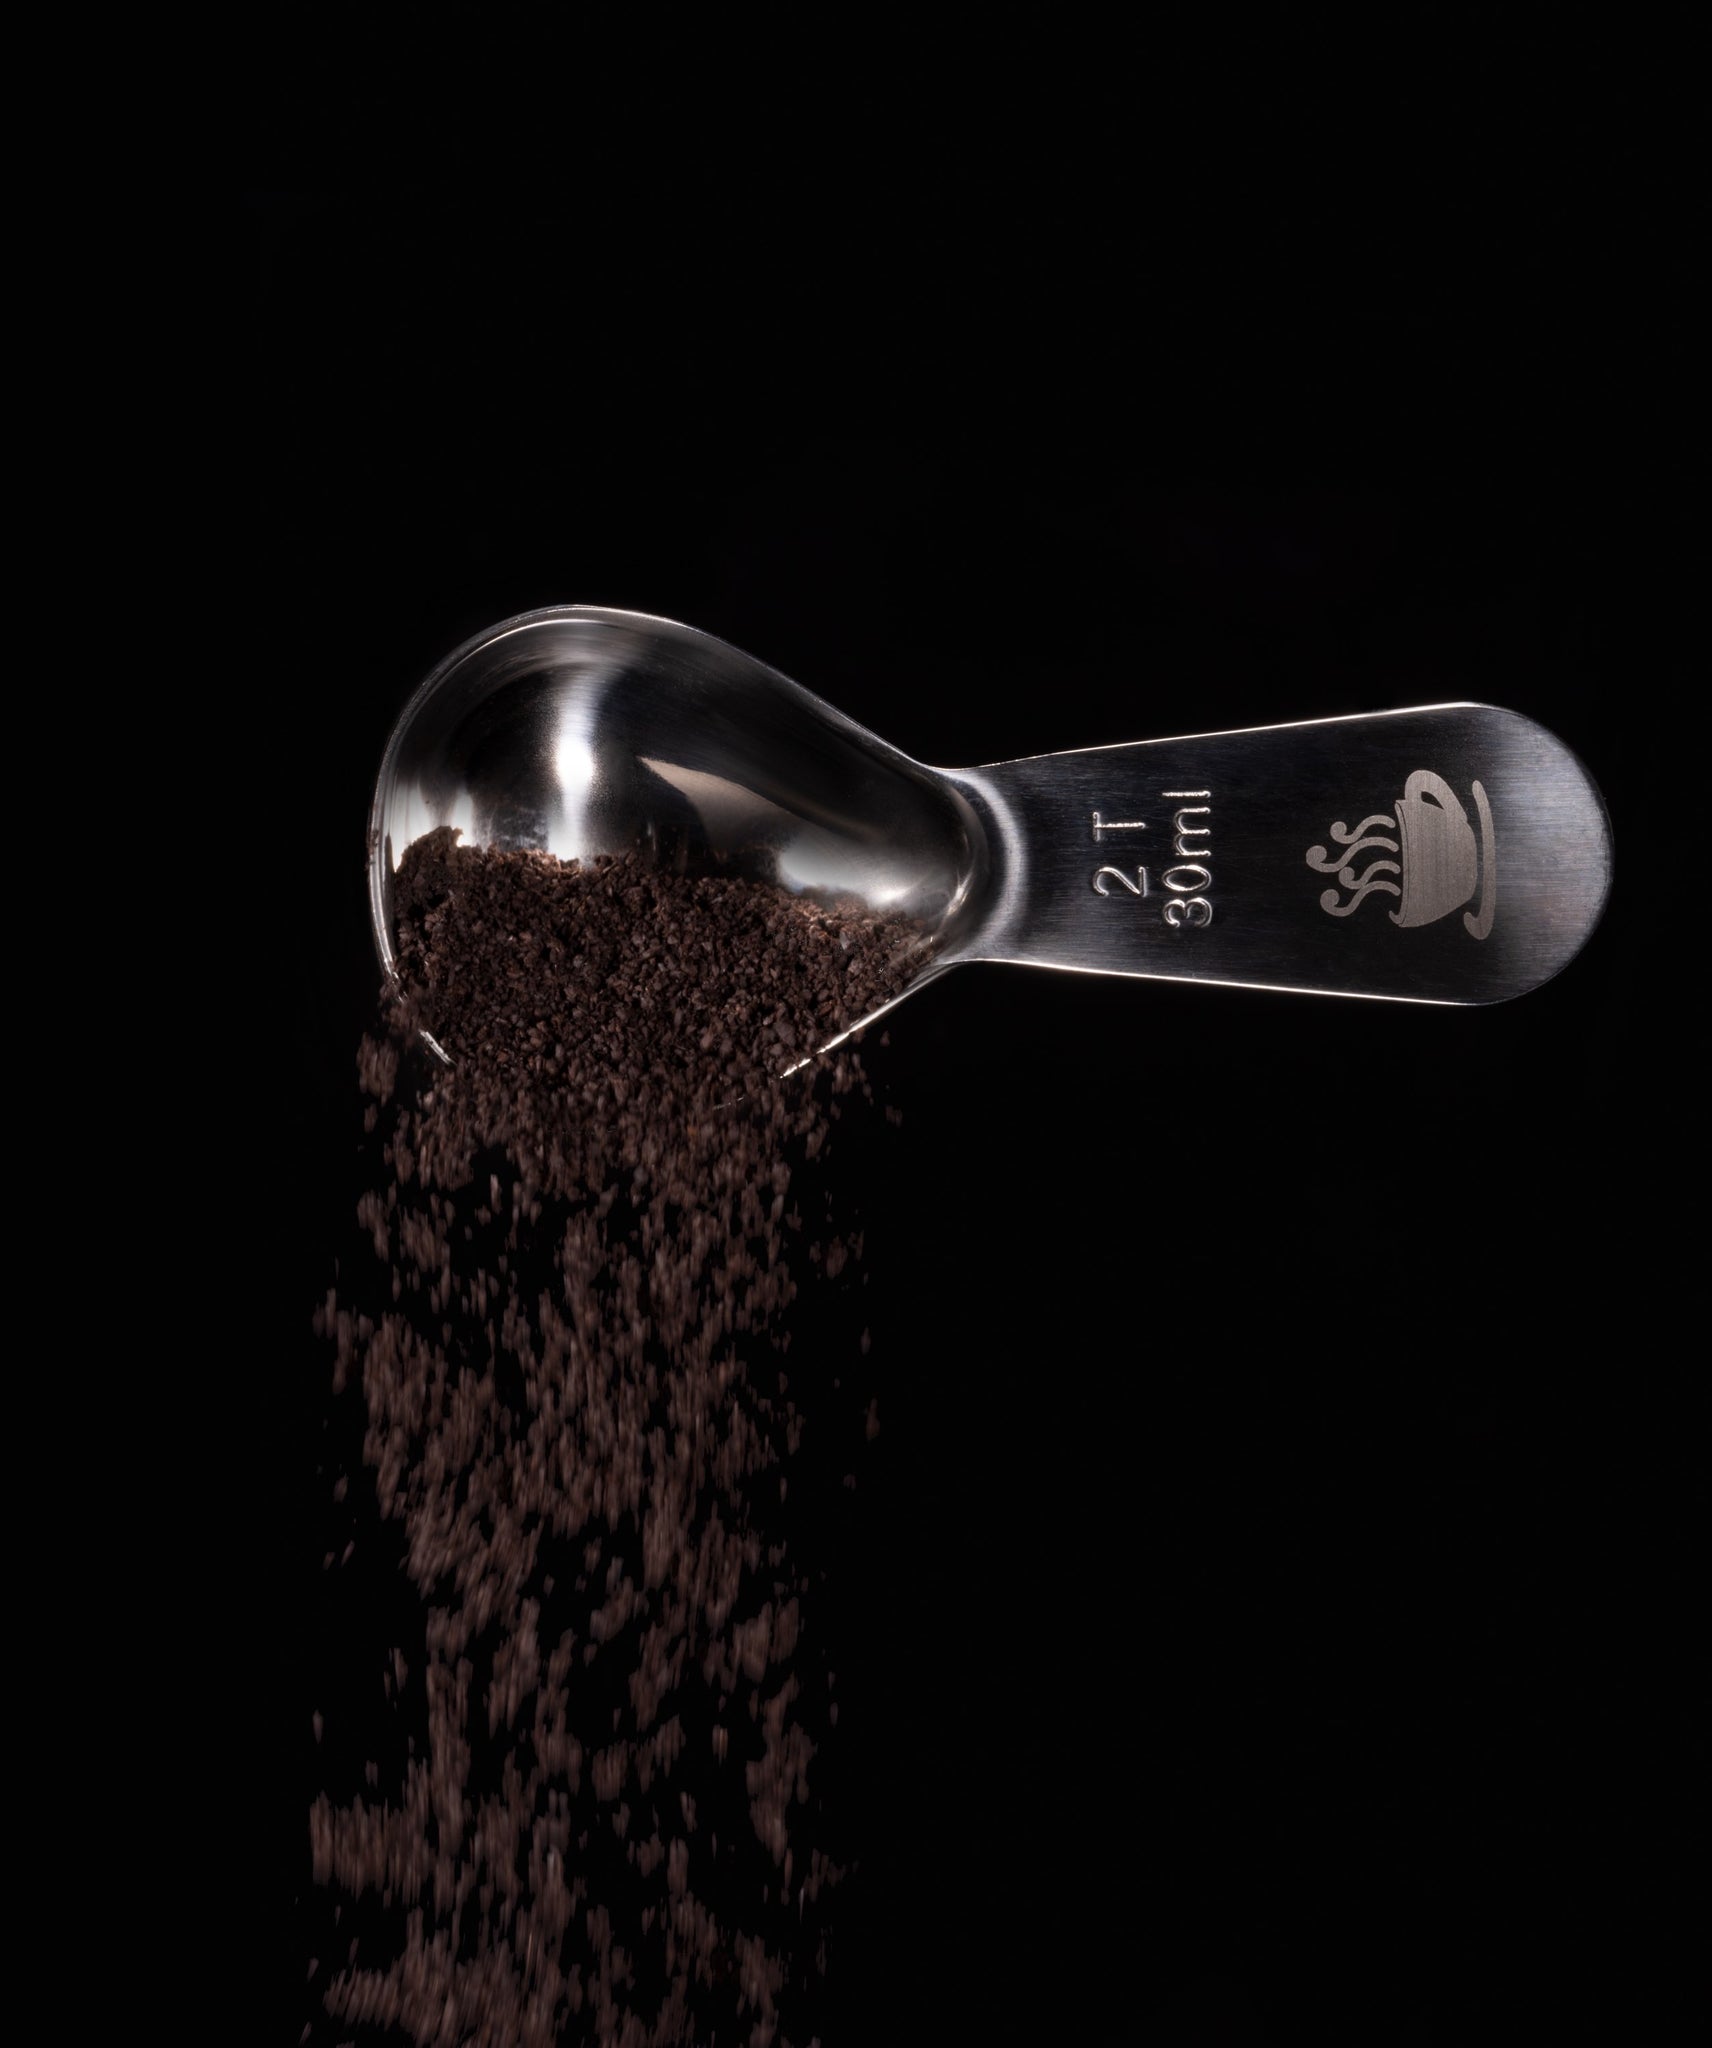 2 Tbsp Coffee Scoop: Coffee Measuring Spoon